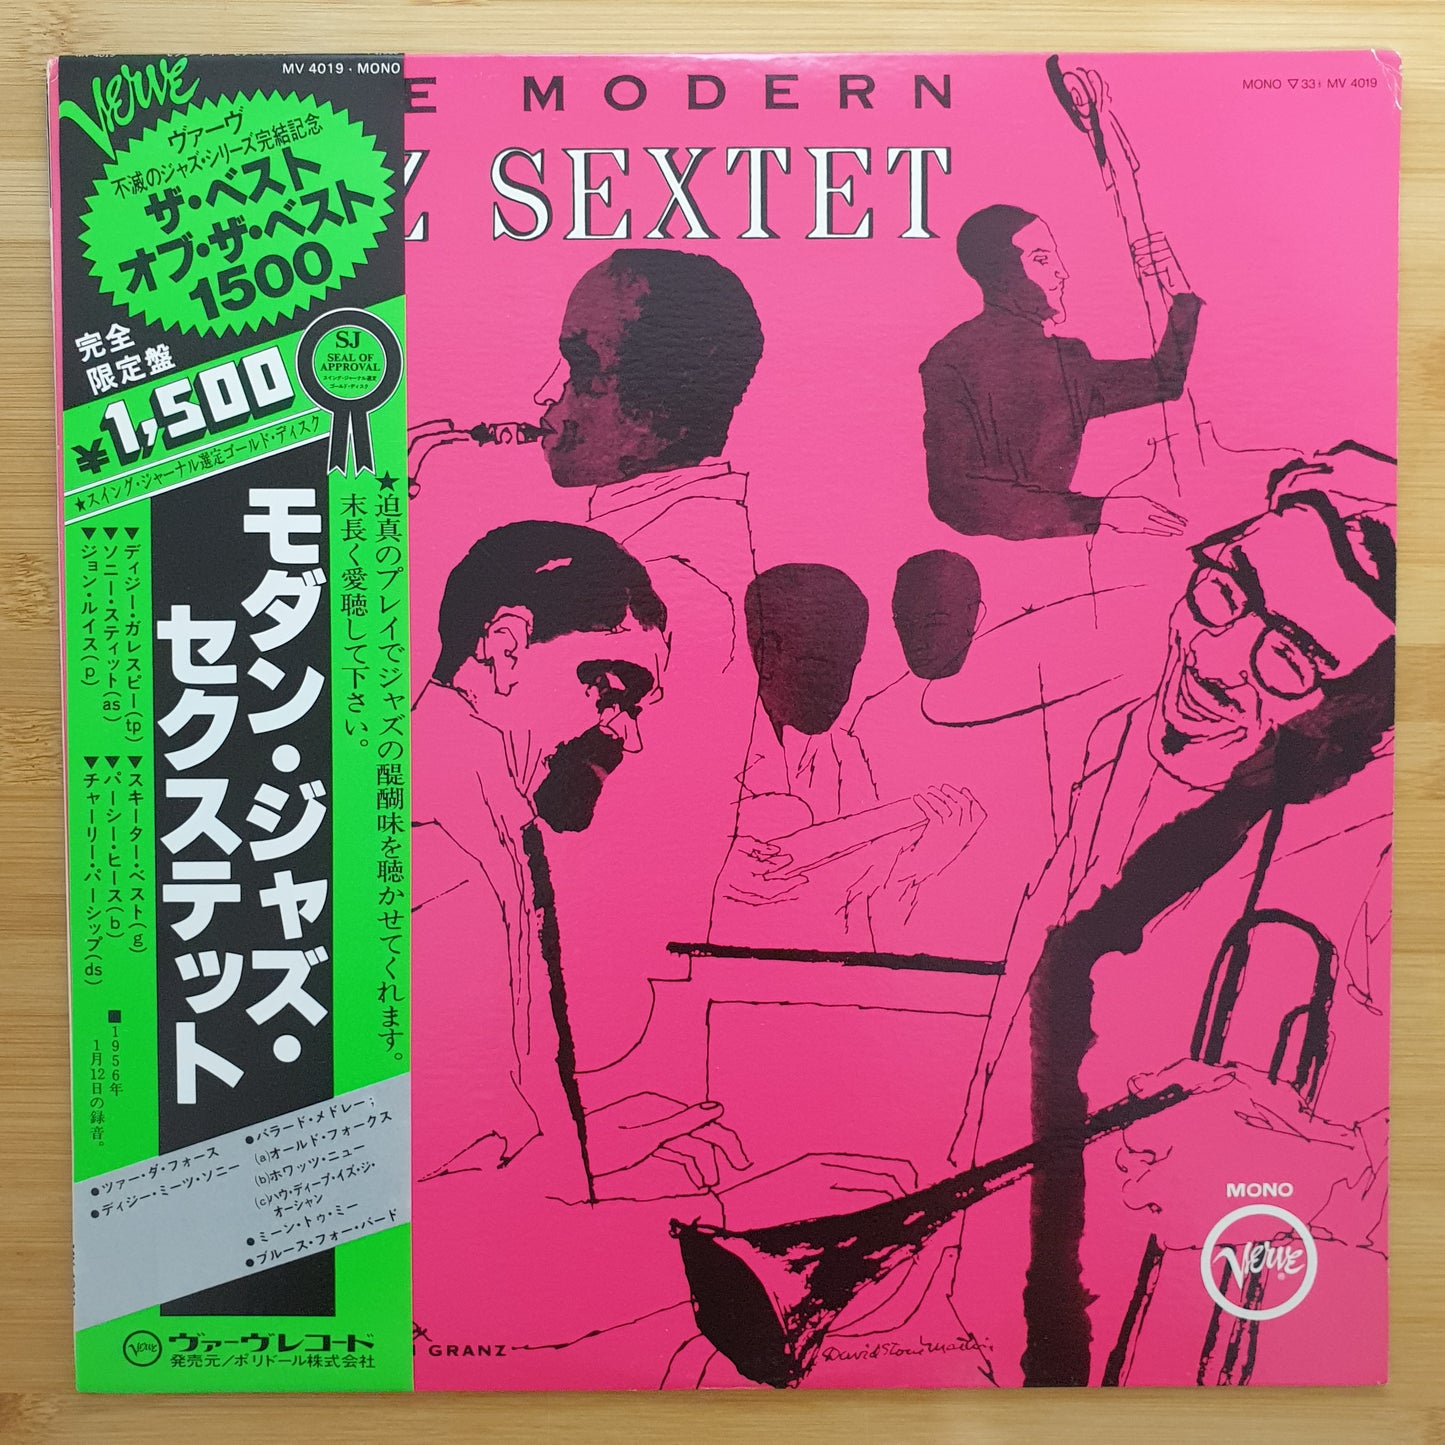 The Modern Jazz Sextet Featuring Dizzy Gillespie, Sonny Stitt, John Lewis, Skeeter Best, Percy Heath & Charlie Persip - The Modern Jazz Sextet